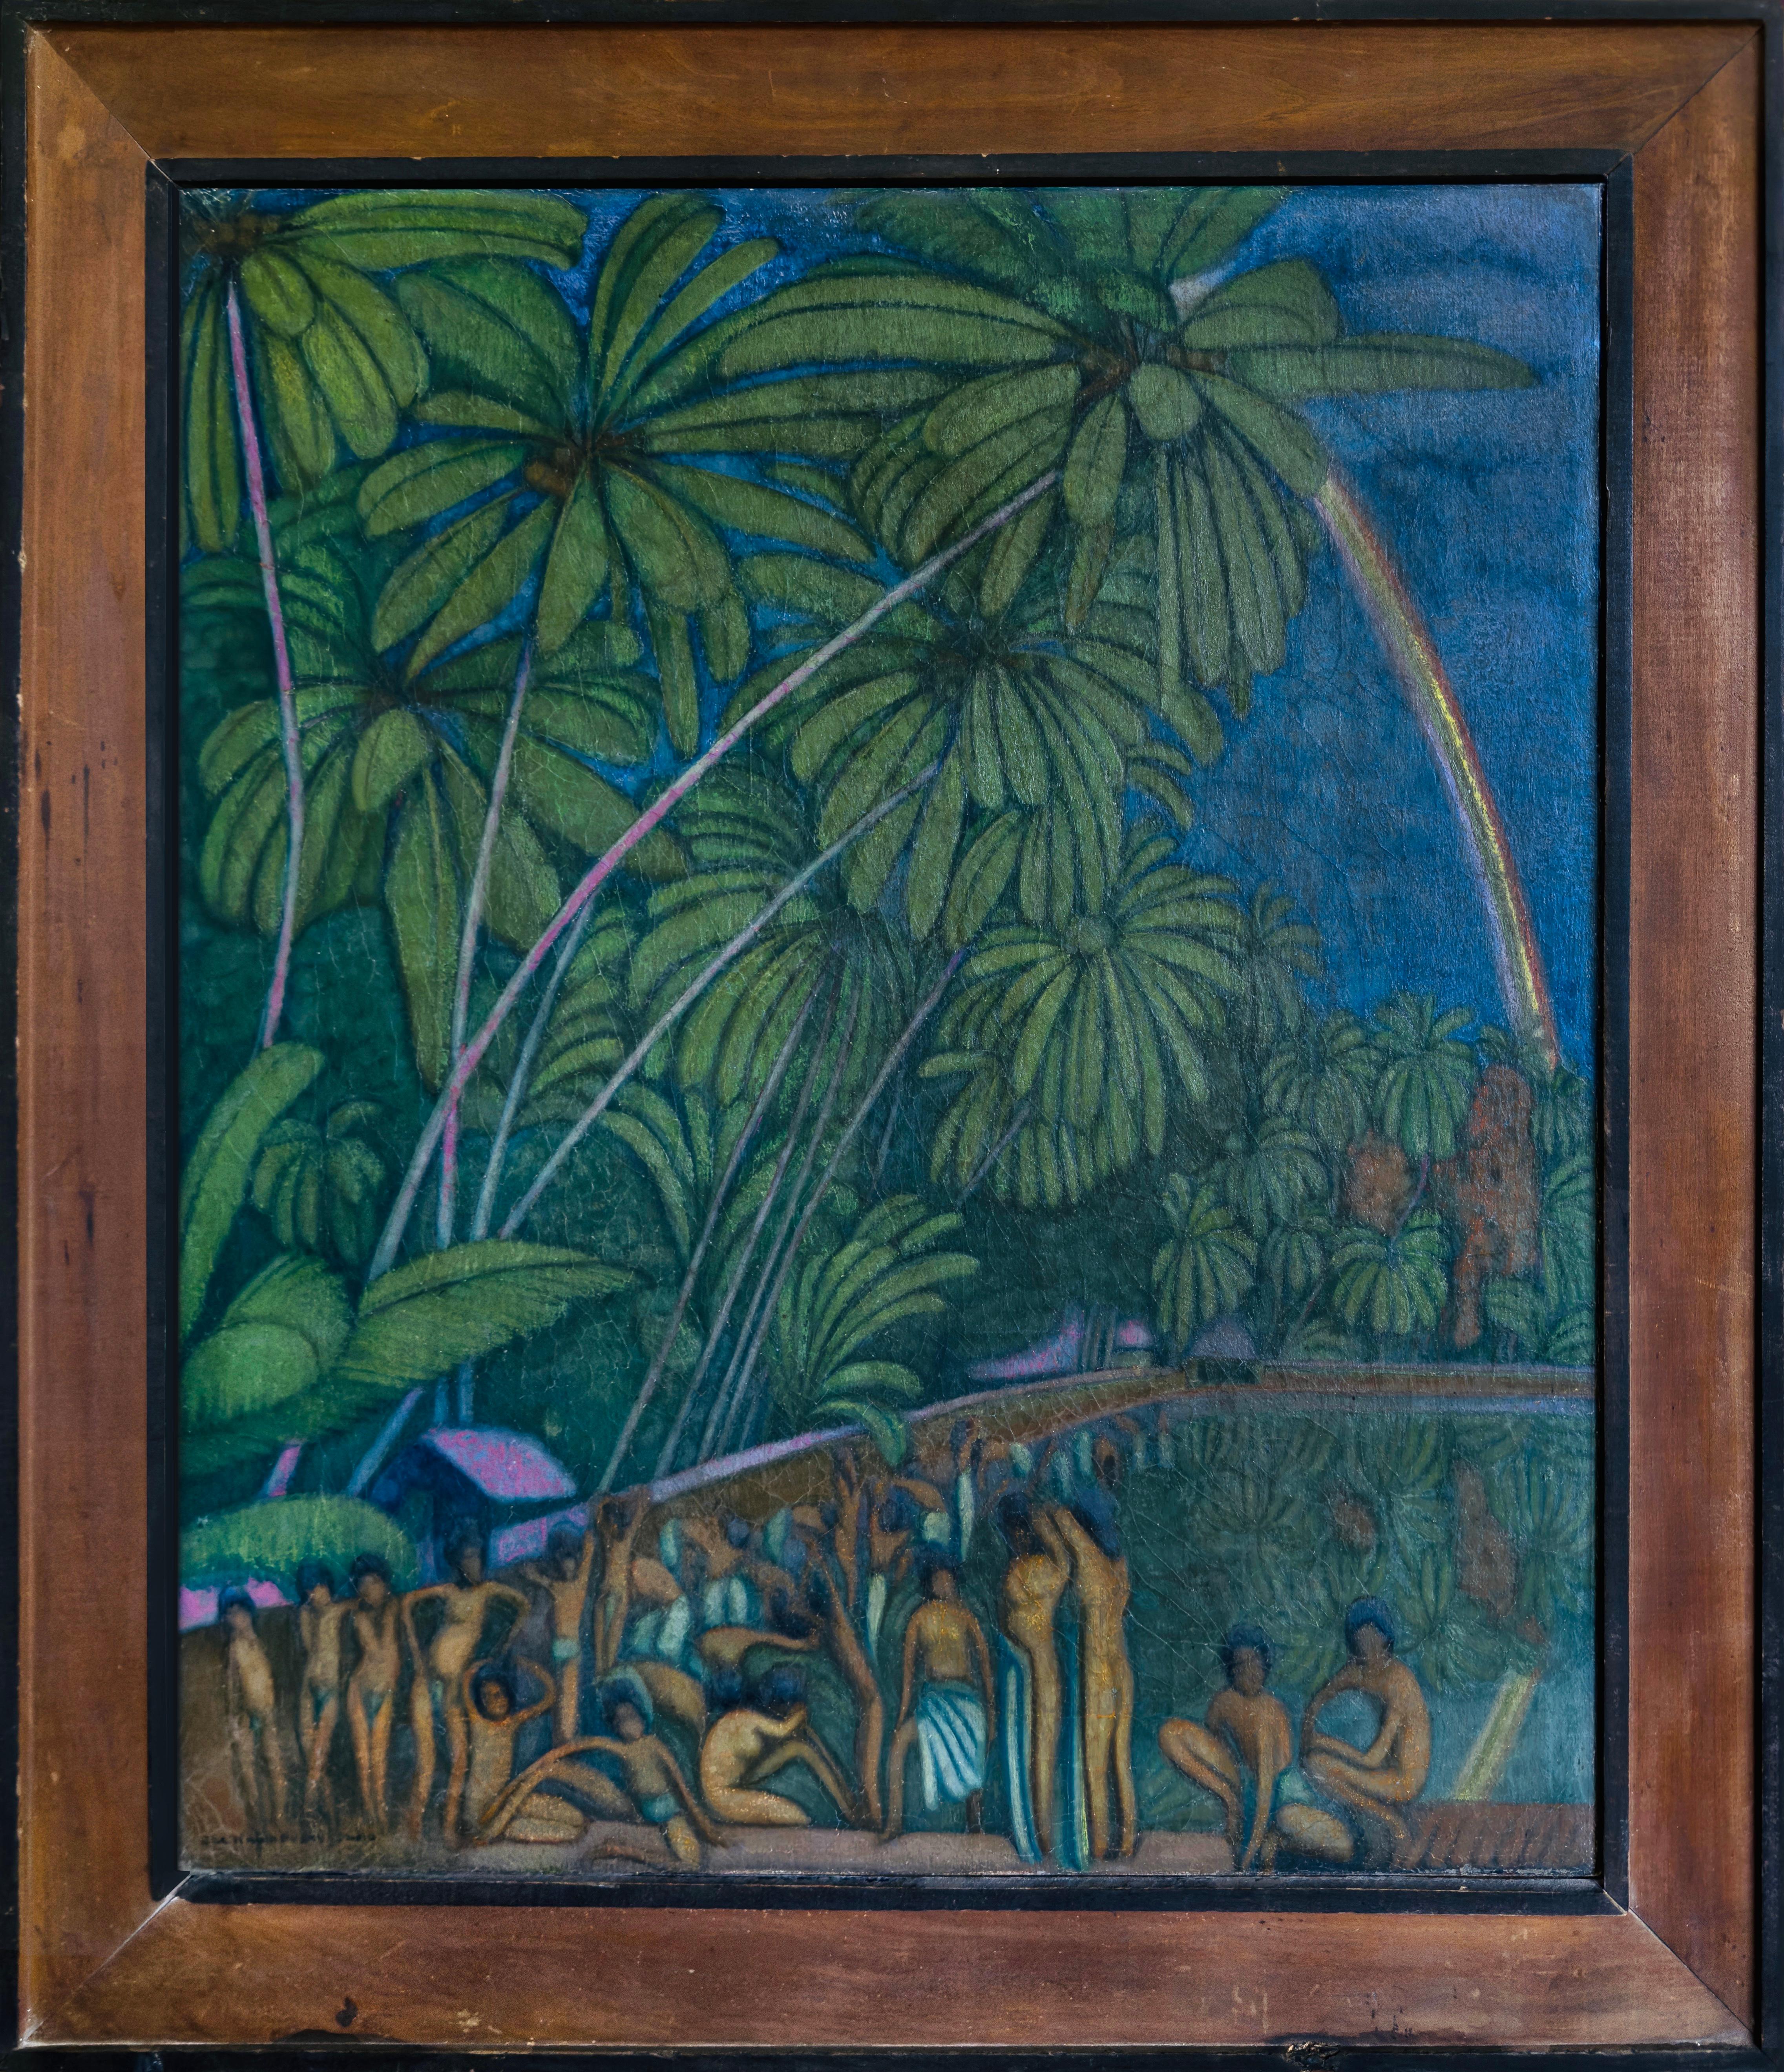 Ölgemälde auf Leinwand Süd Dschungel 1920er Jahre Signiert Gelisteter Künstler Grün Blauer Regenbogen Indien 